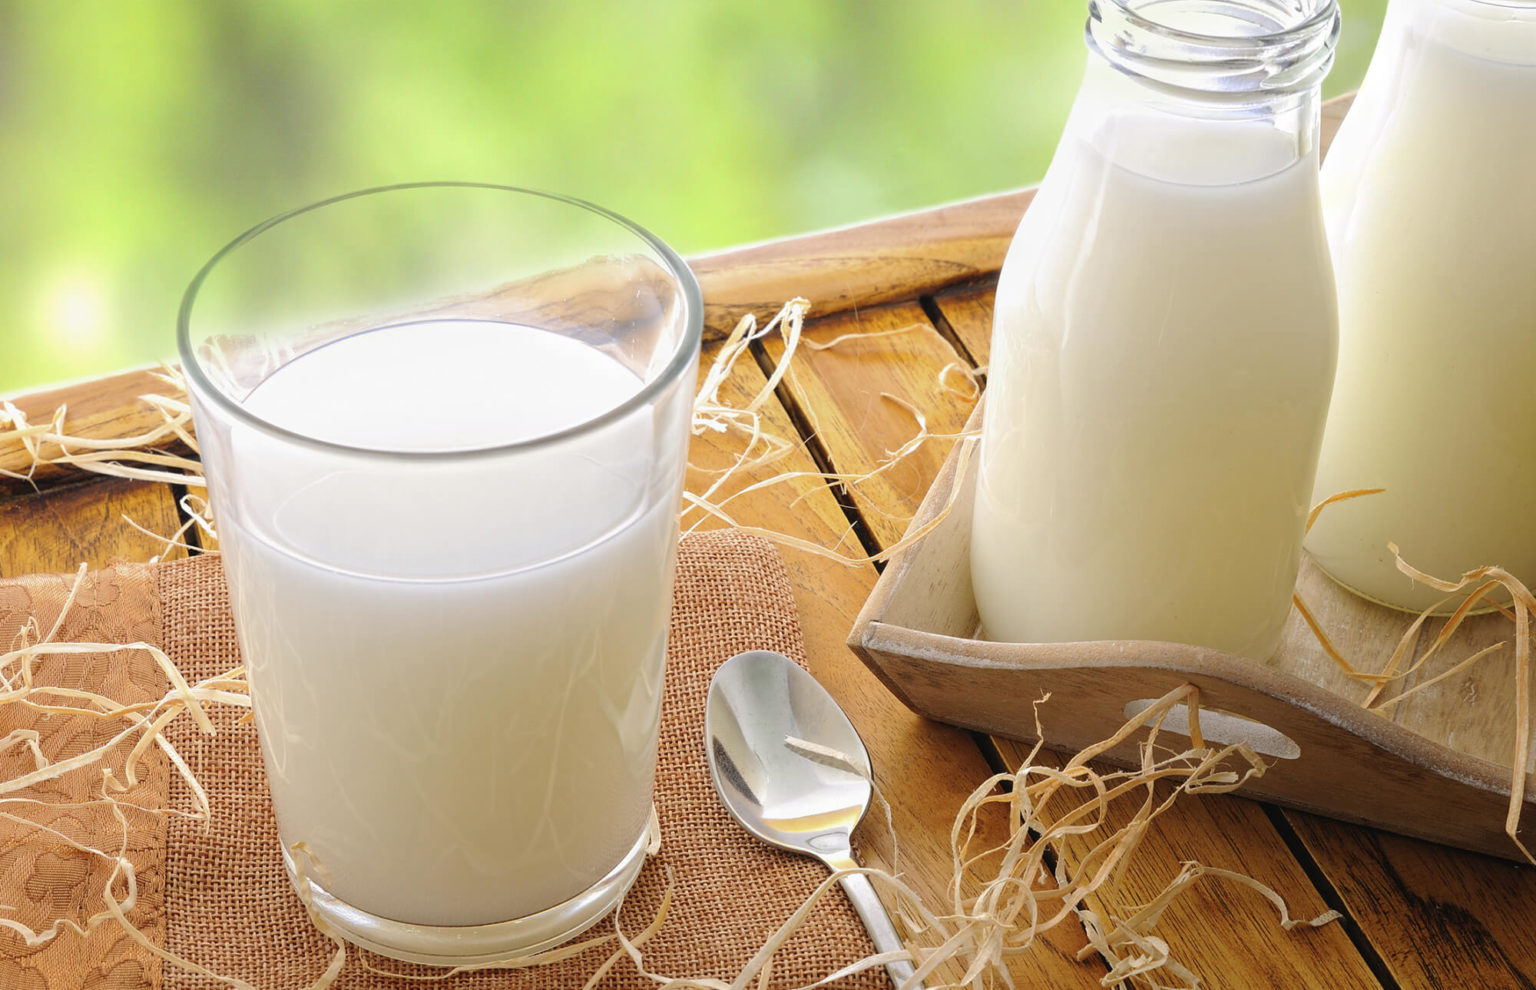 АКОРТ: предприятия ритейла начали реализовывать промаркированную молочную продукцию